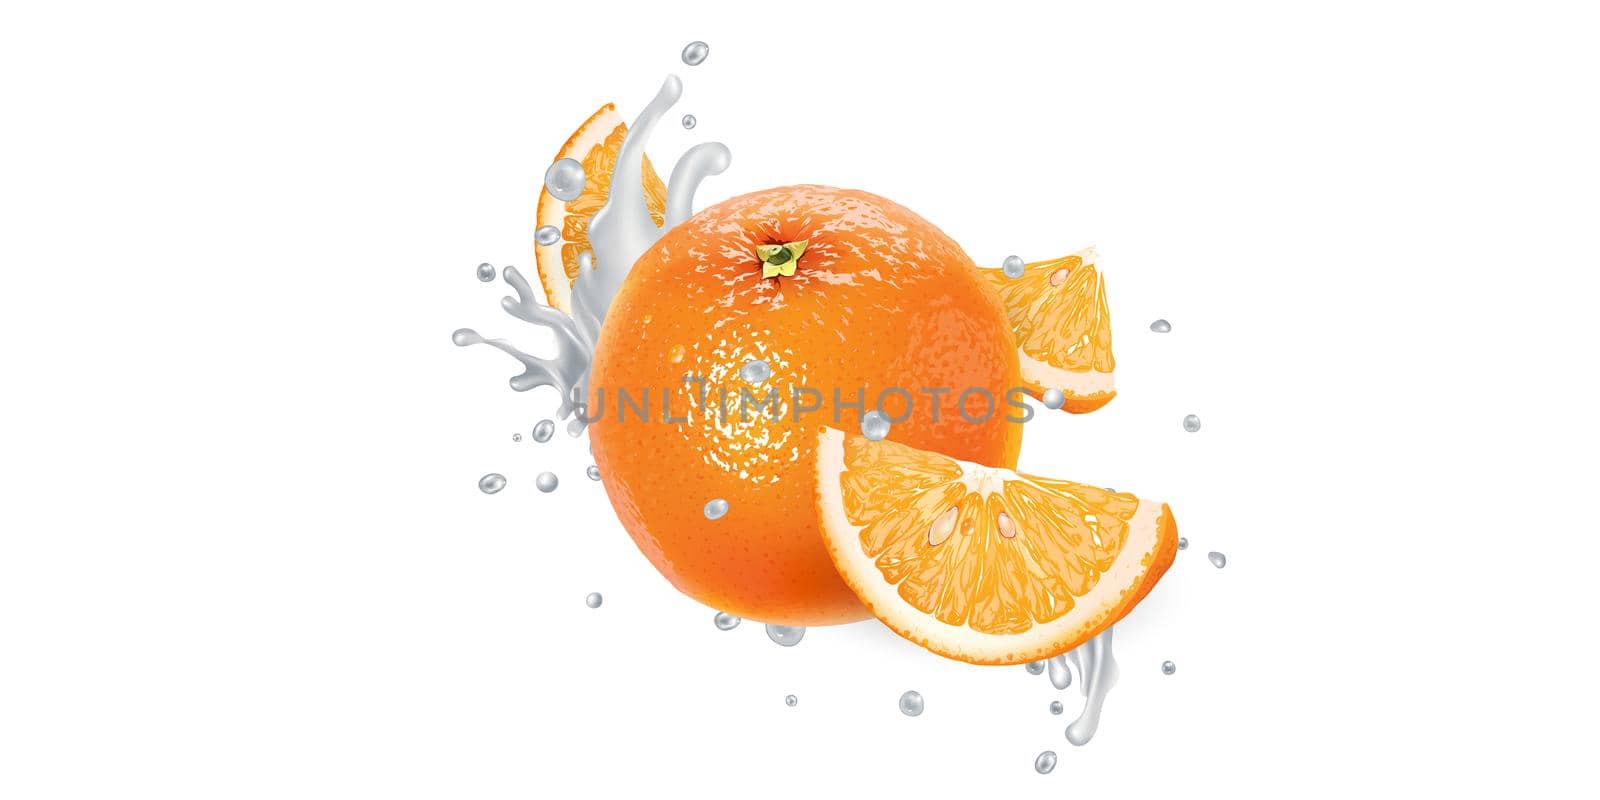 Fresh orange in yogurt splashes on a white background. Realistic style illustration.